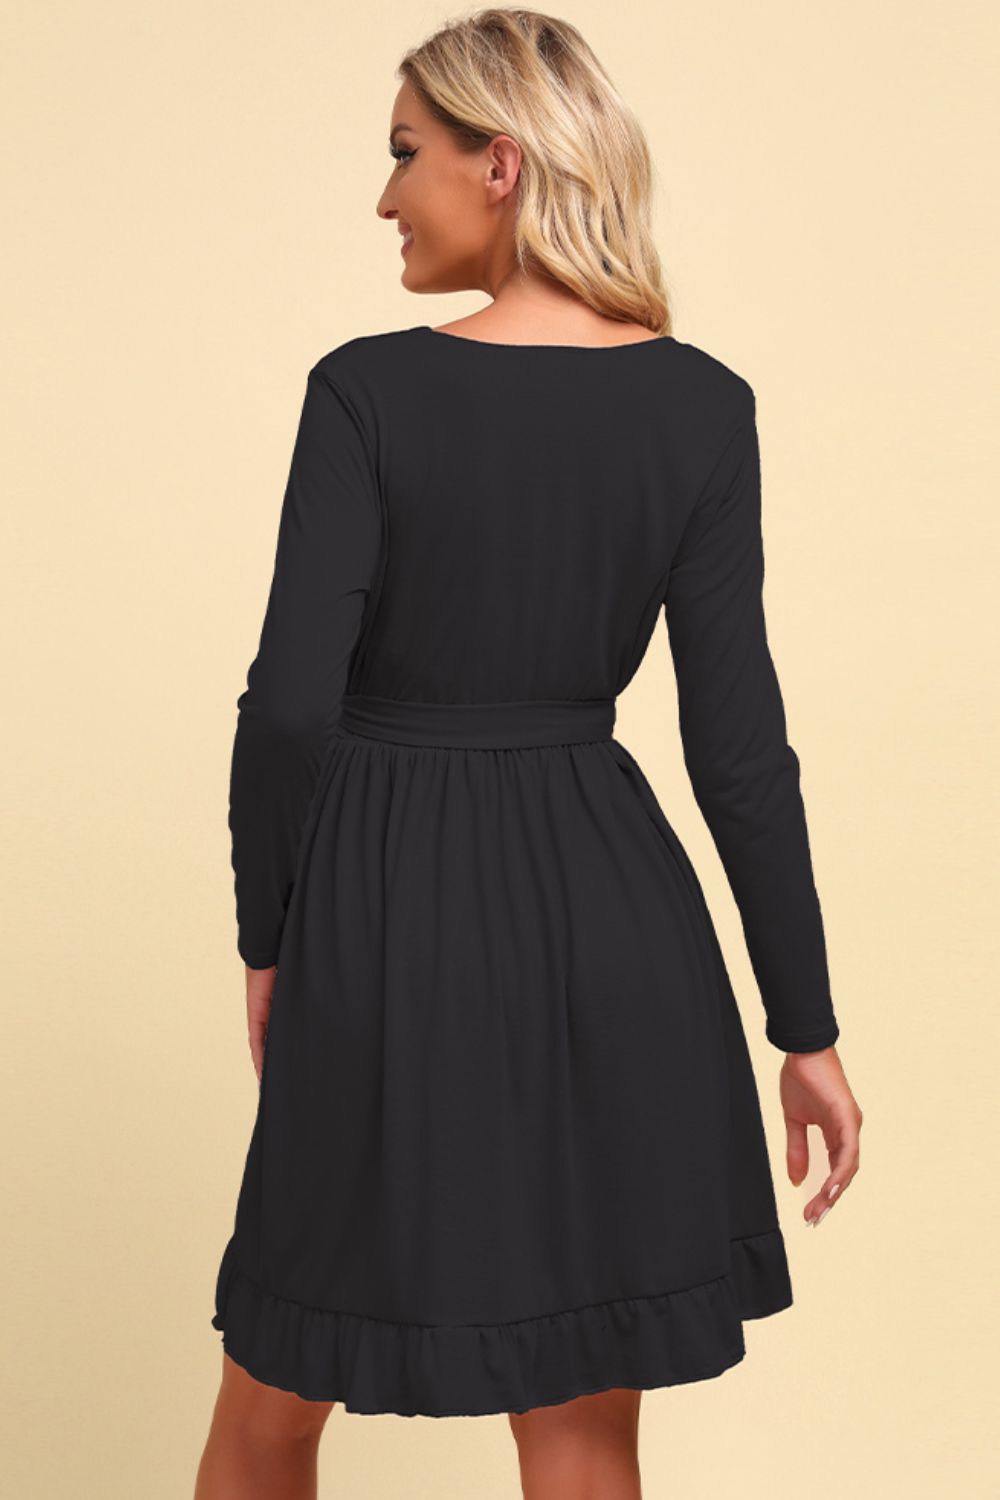 Long Sleeve Tie Waist Ruffle Hem Dress - Shop women apparel, Jewelry, bath & beauty products online - Arwen's Boutique